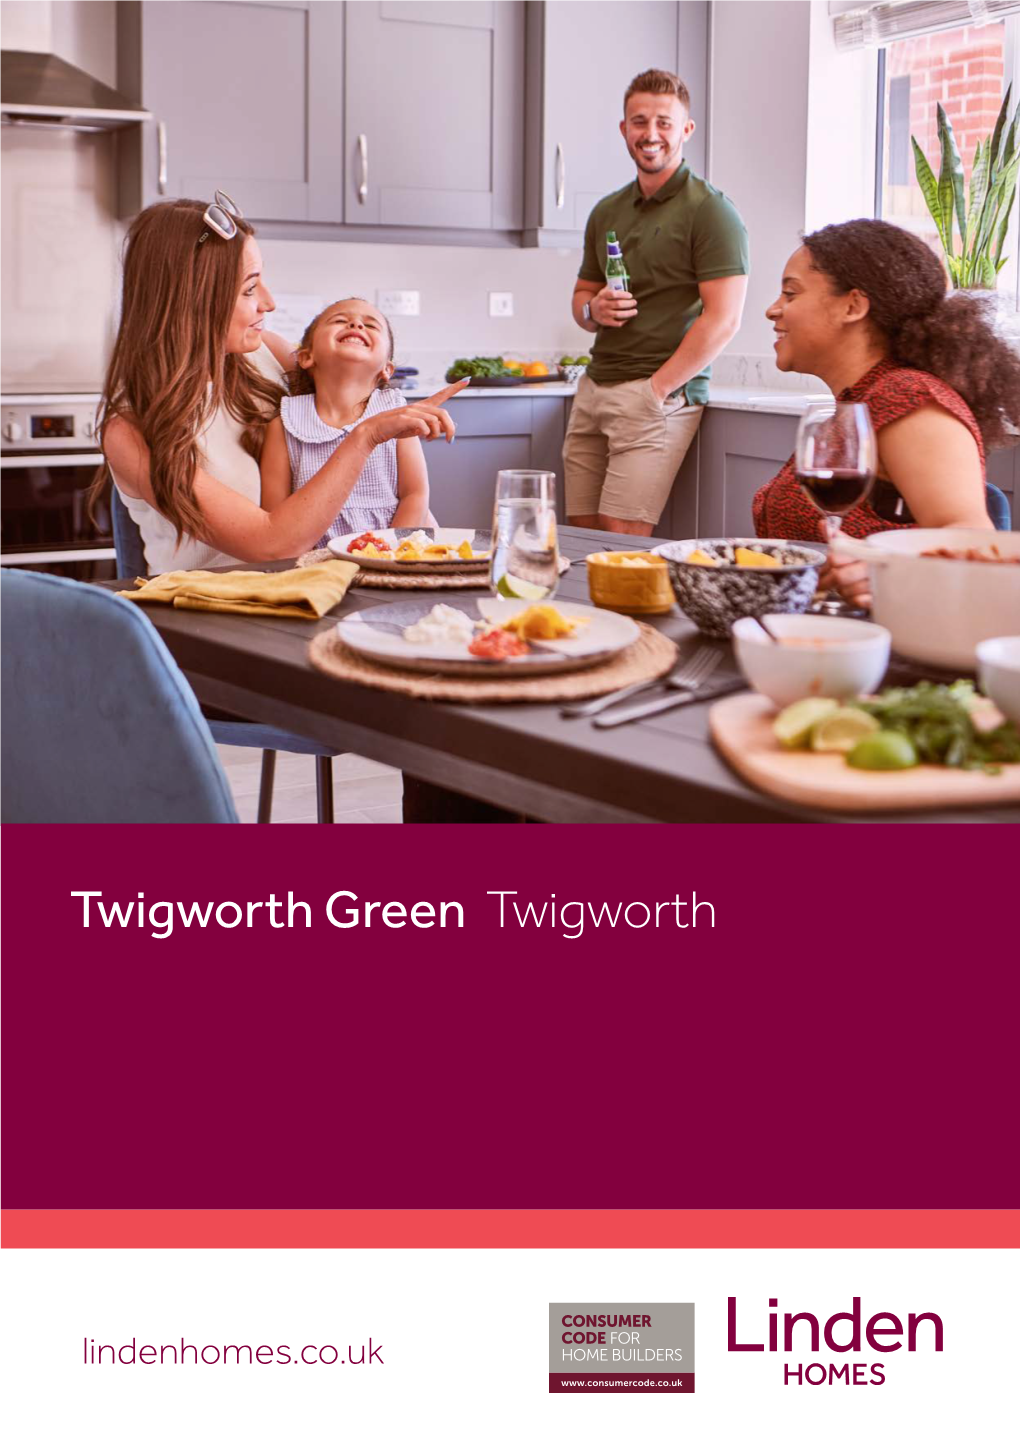 Twigworth Green Twigworth